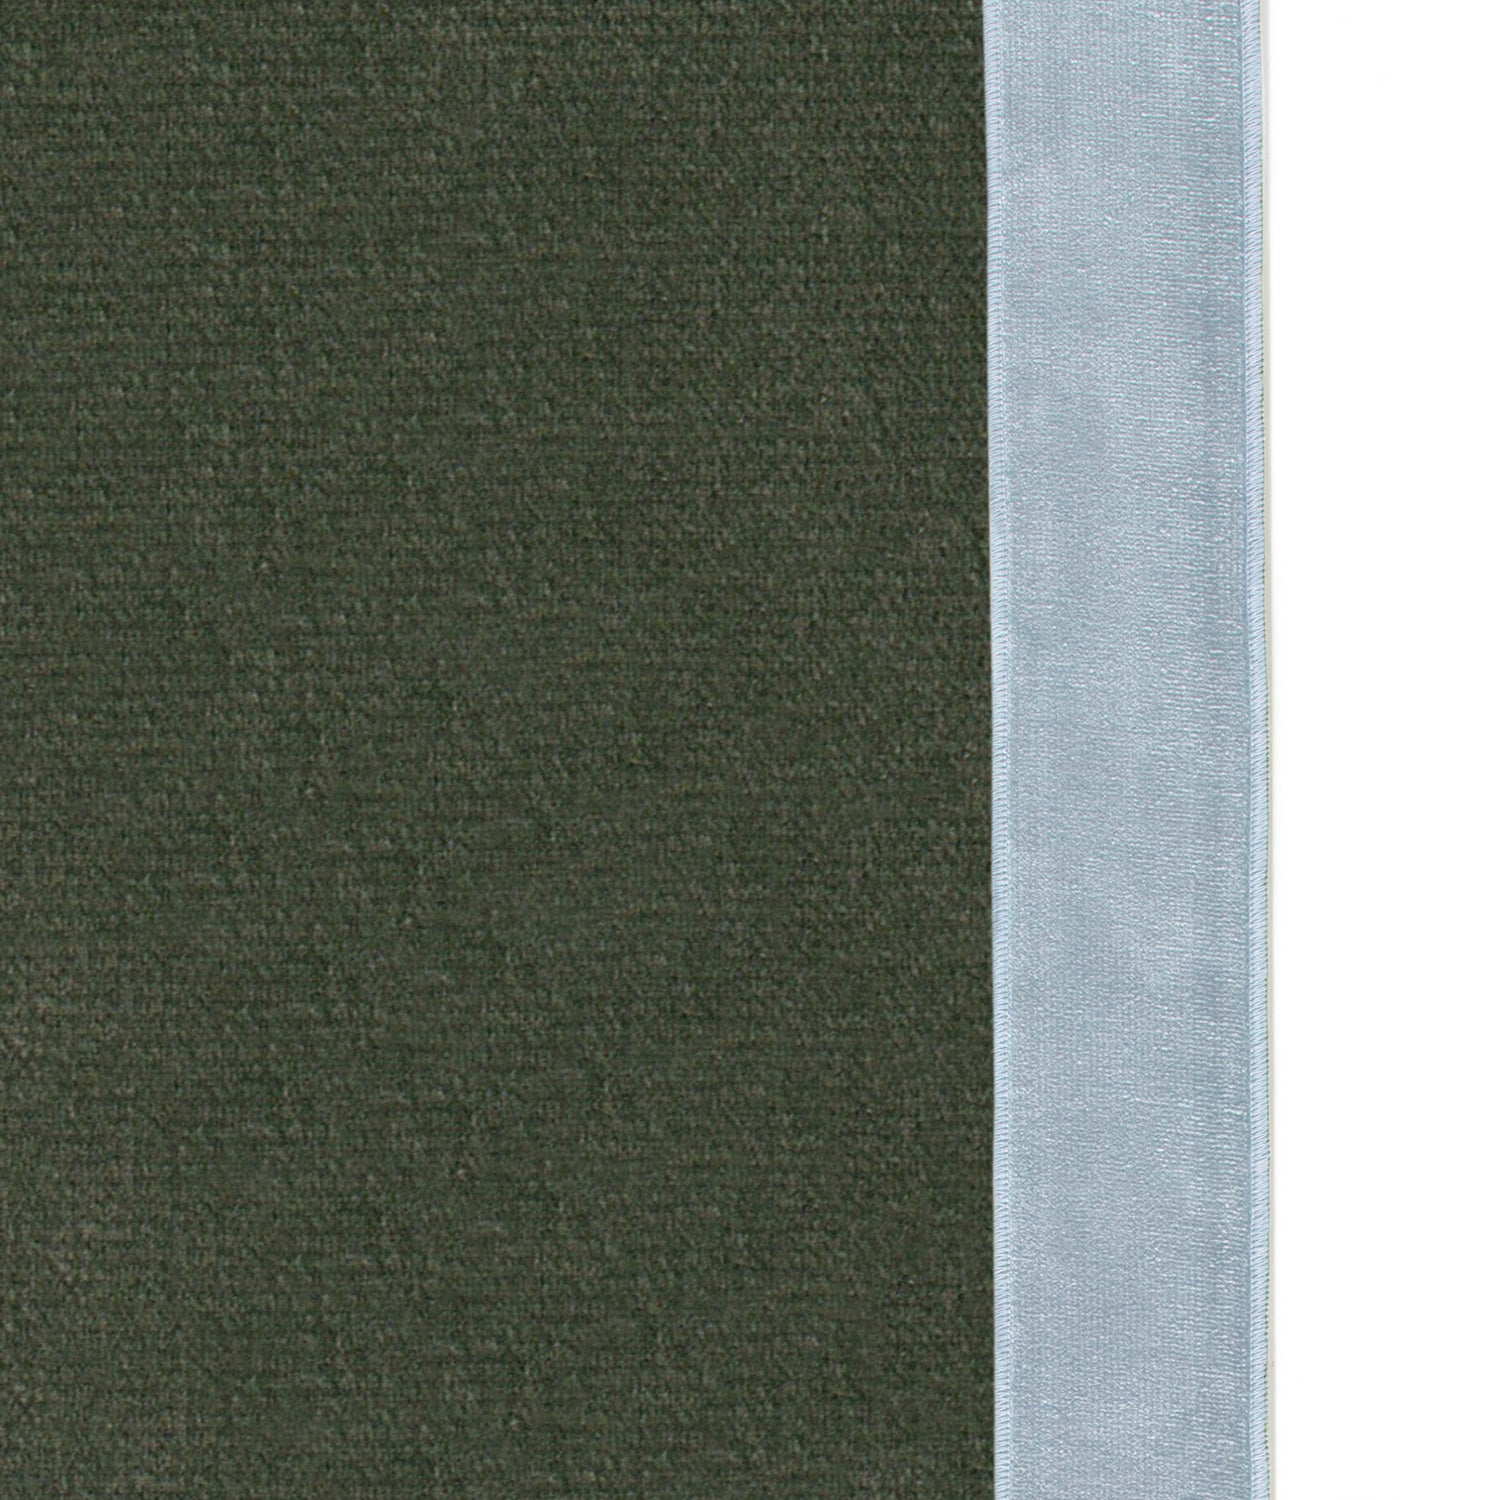 Upclose picture of Fern Velvet custom Fern Greencurtain with sky velvet band trim